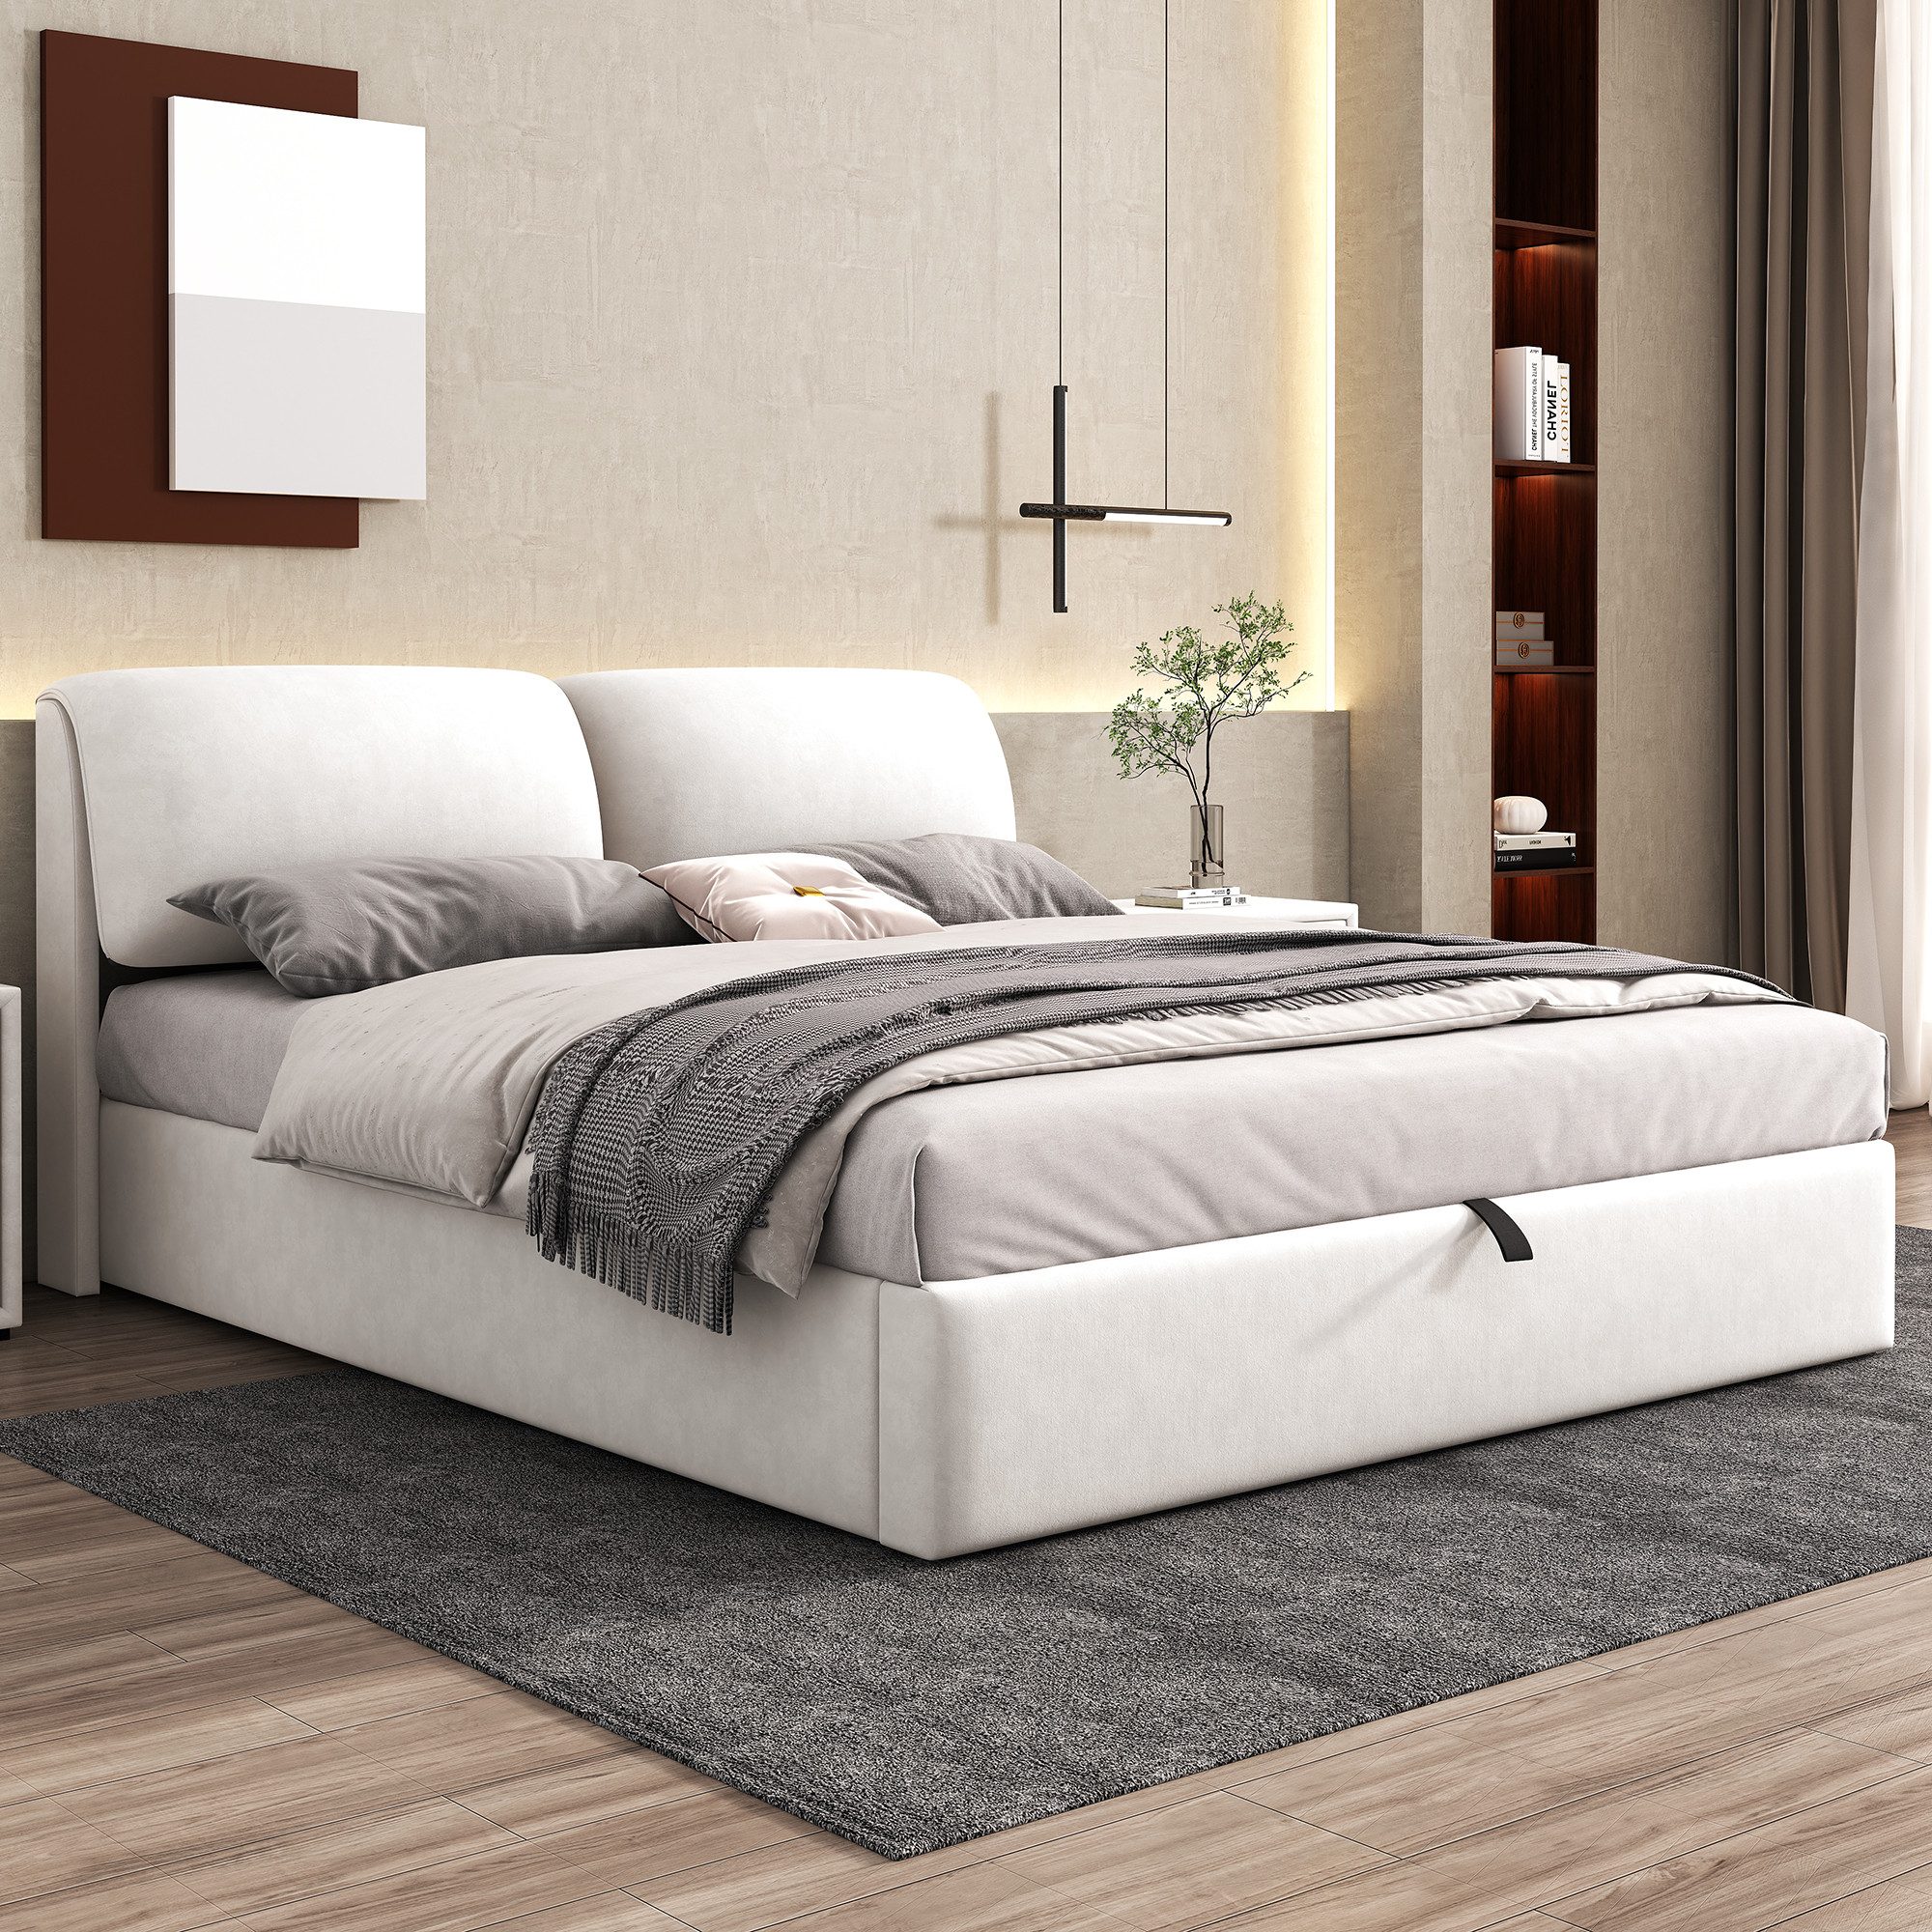 REDOM Polsterbett Hydraulisches Bett (180*200cm), mit 3 Schubladen,Bettkasten zur Aufbewahrung, Lattenrost mit Kopfteil